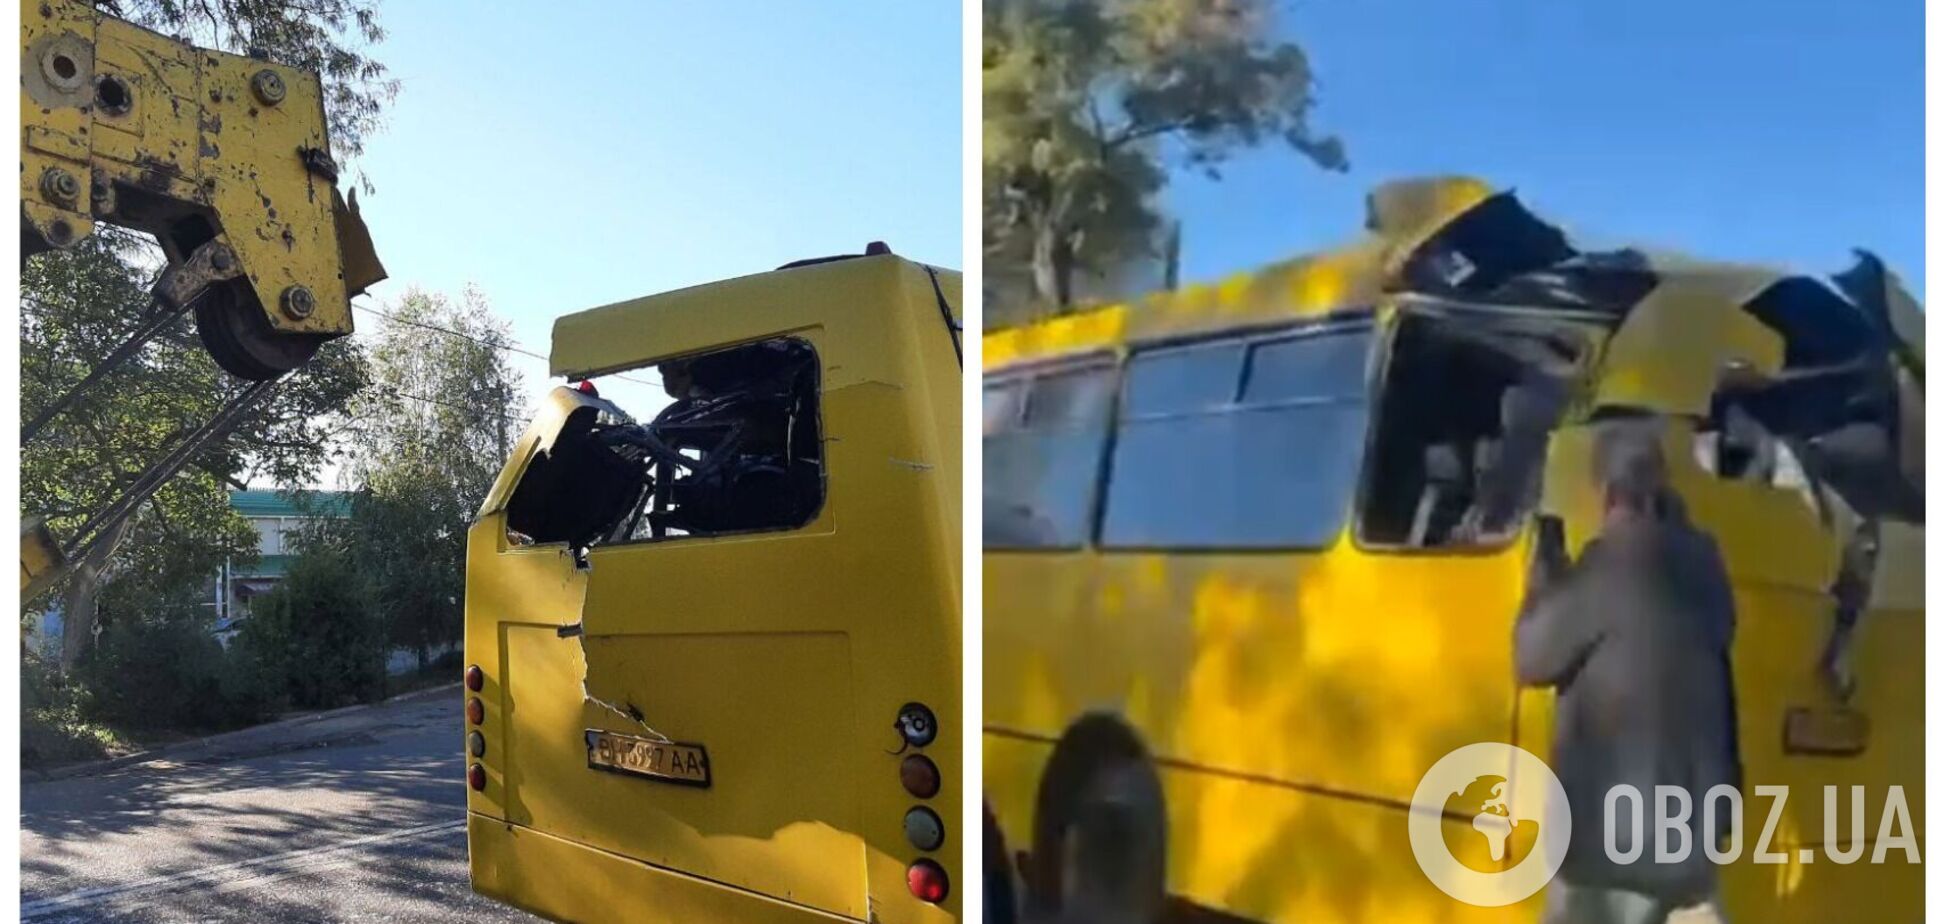 В Одессе пьяный водитель автокрана влетел в маршрутку, многие пострадали: видео первых минут после ДТП